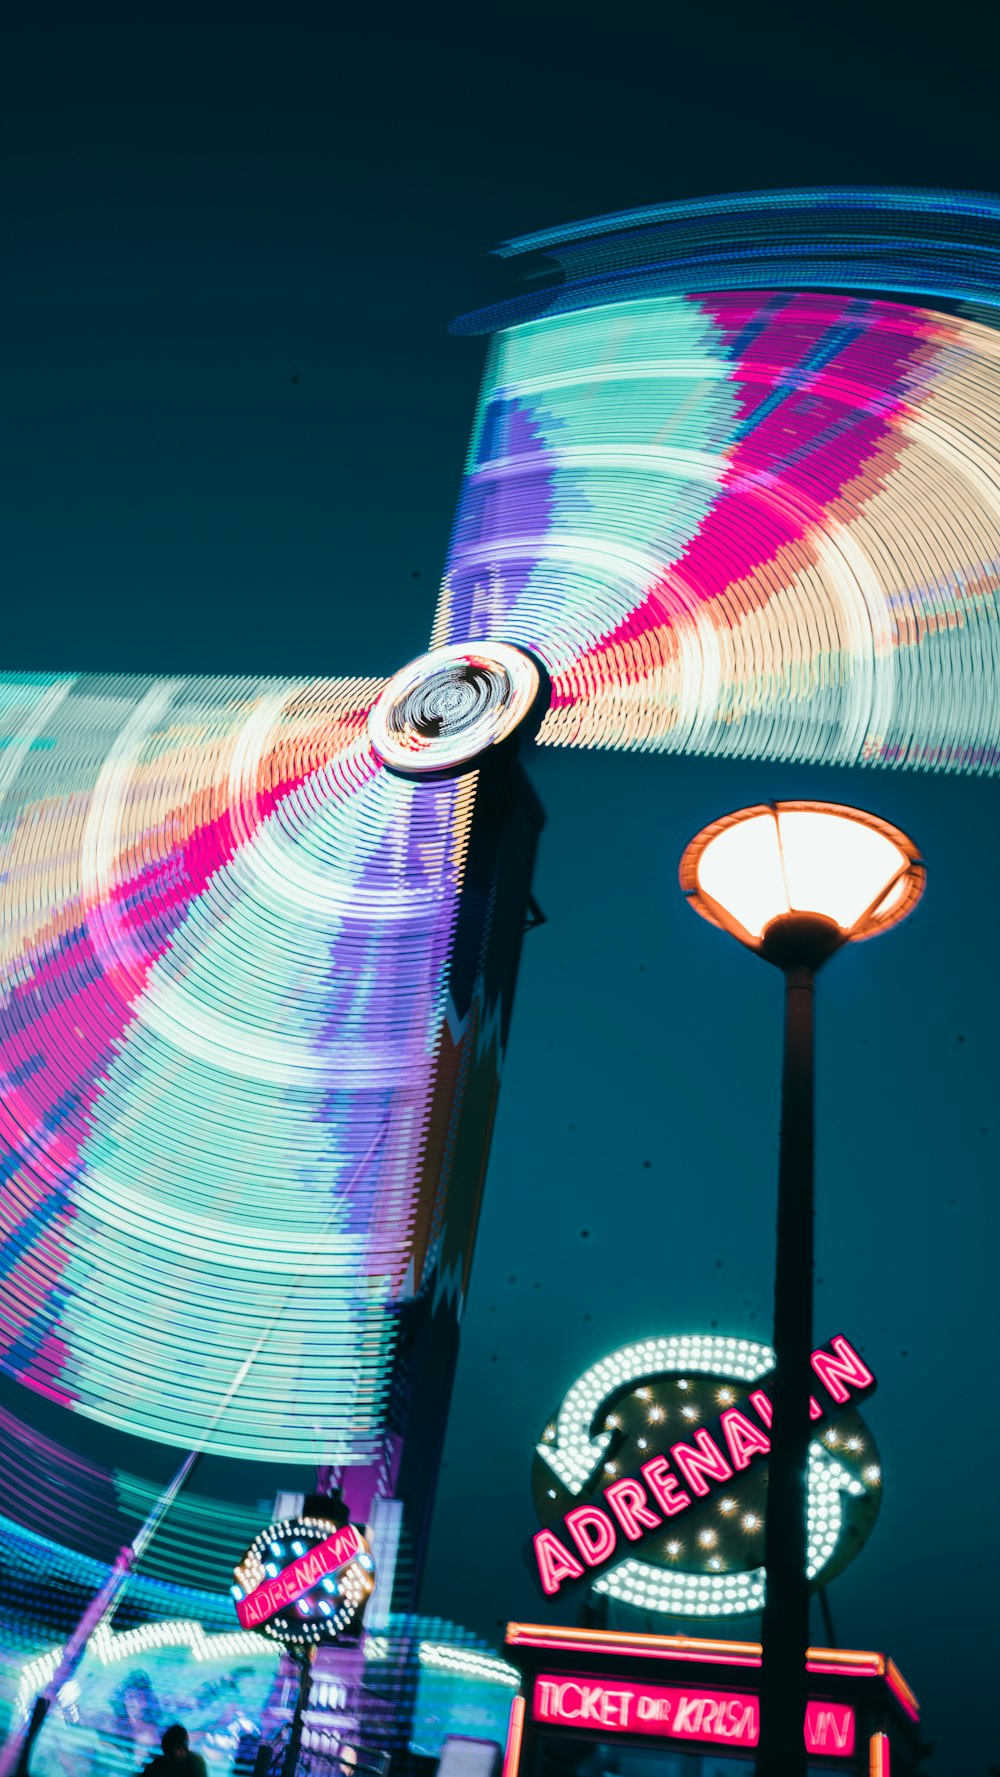 Eine Karnevalsfahrt bei Nacht mit bunten Lichtern